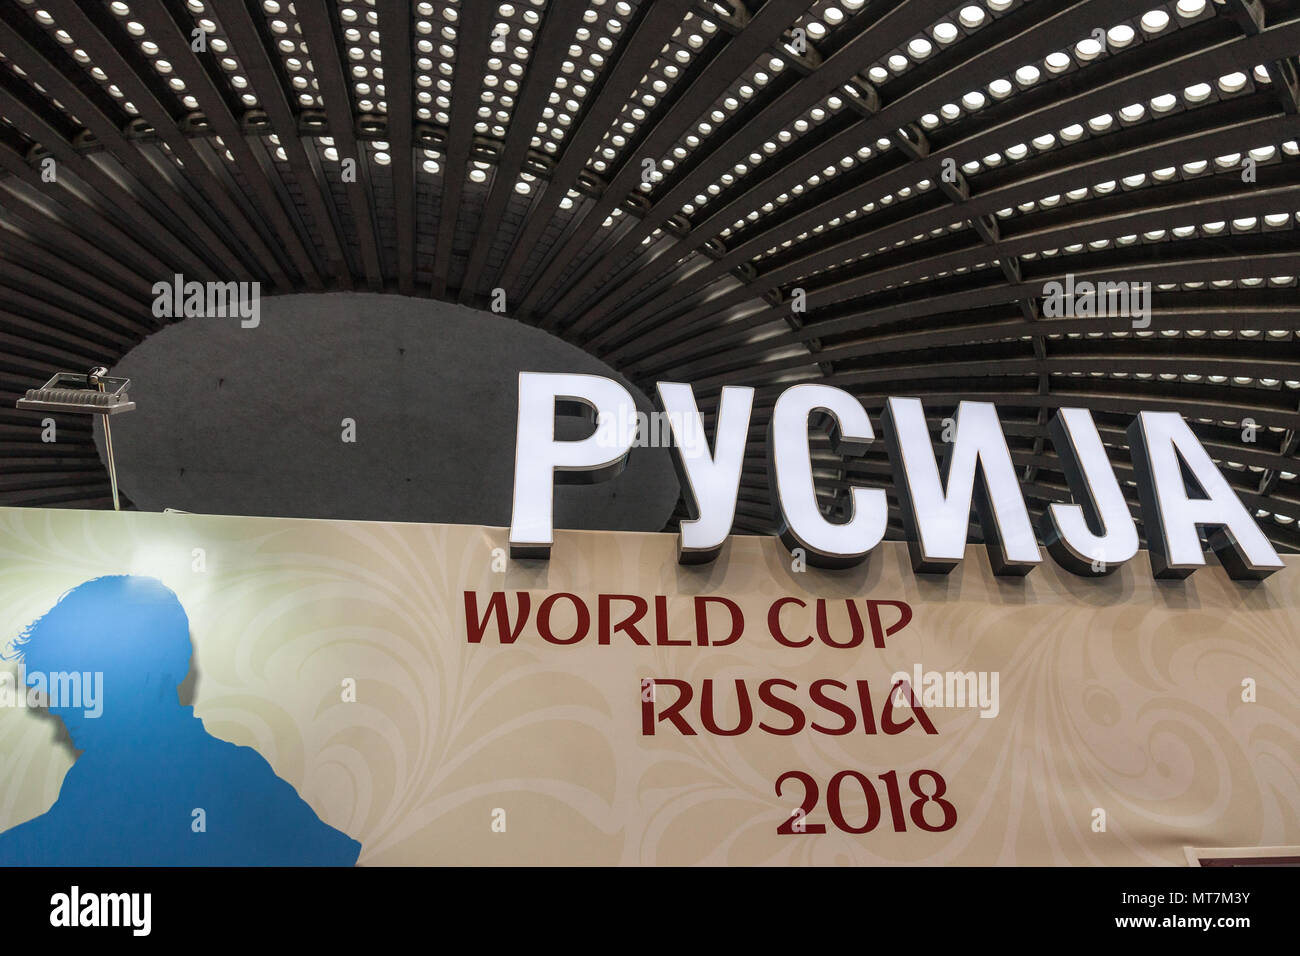 Belgrado, Serbia - Febrero 23, 2018: el logotipo de la Copa Mundial de la FIFA Football 2018 en Rusia en una feria en Serbia, la palabra Rusia está escrito en Cirilo Foto de stock